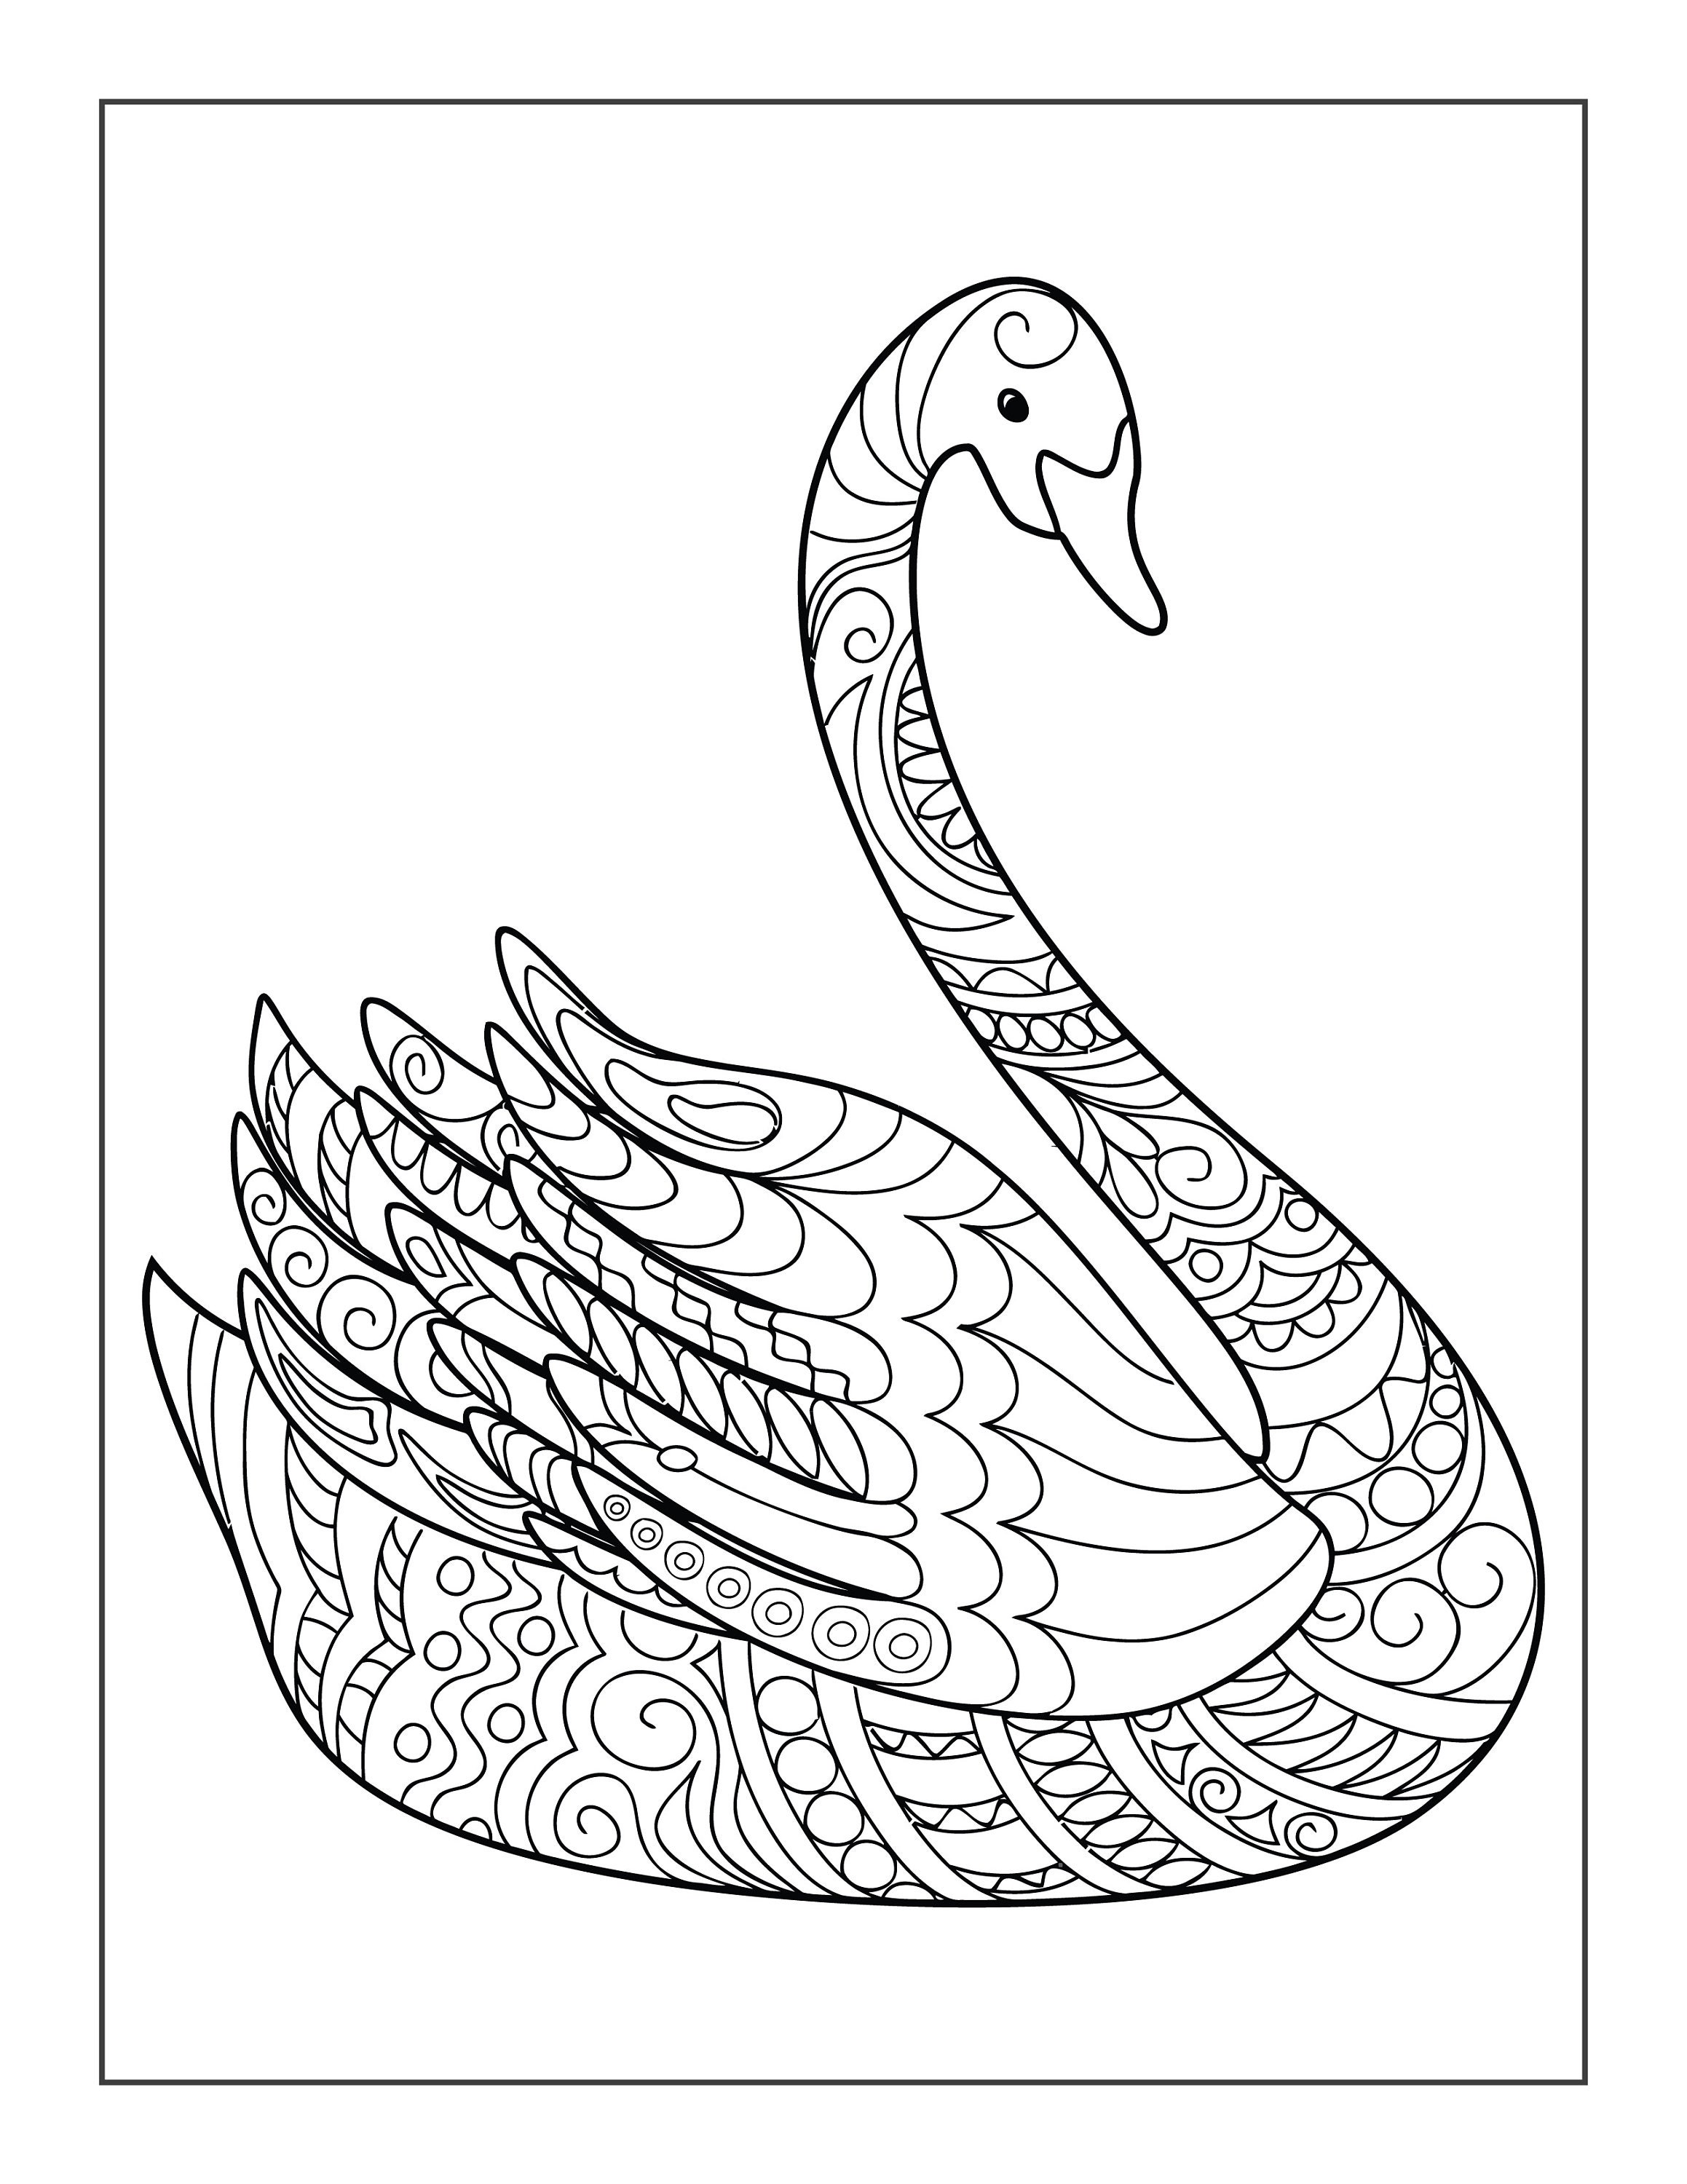 Dibujos imprimibles de cisne para colorear para niãos y adultos